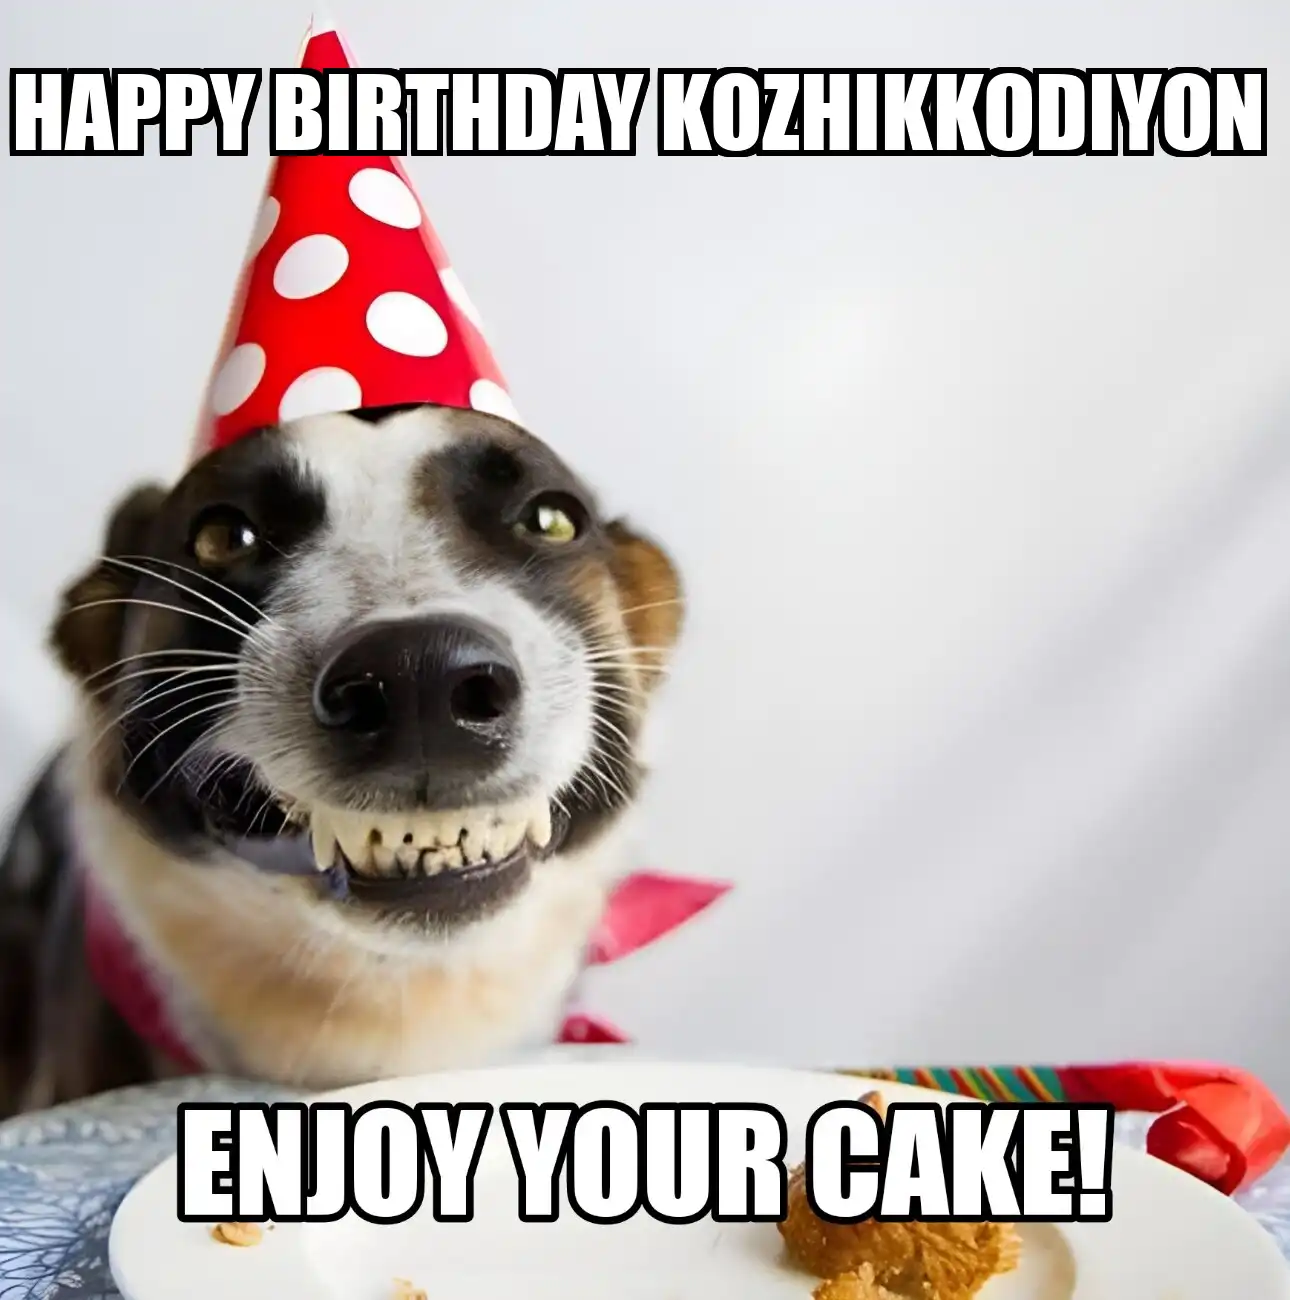 Happy Birthday Kozhikkodiyon Enjoy Your Cake Dog Meme